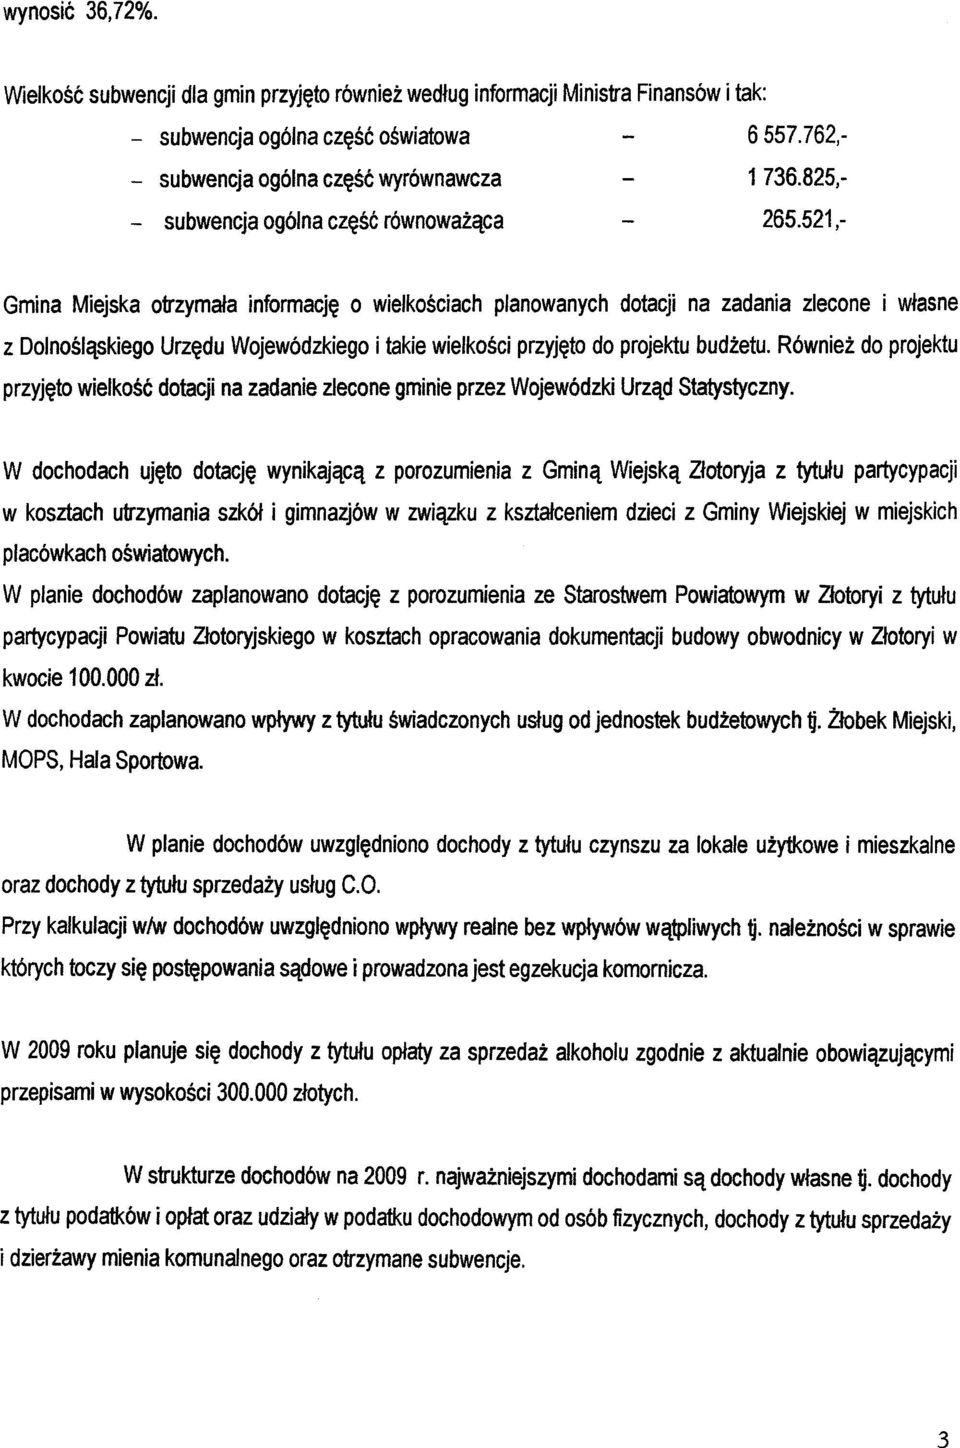 521,- Gmina Miejska otrzymala informacje o wielkosciach planowanych dotacji na zadania zlecone i wlasne z Dolnoslaskiego Urzedu Wojewódzkiego i takie wielkosci przyjeto do projektu budzetu.